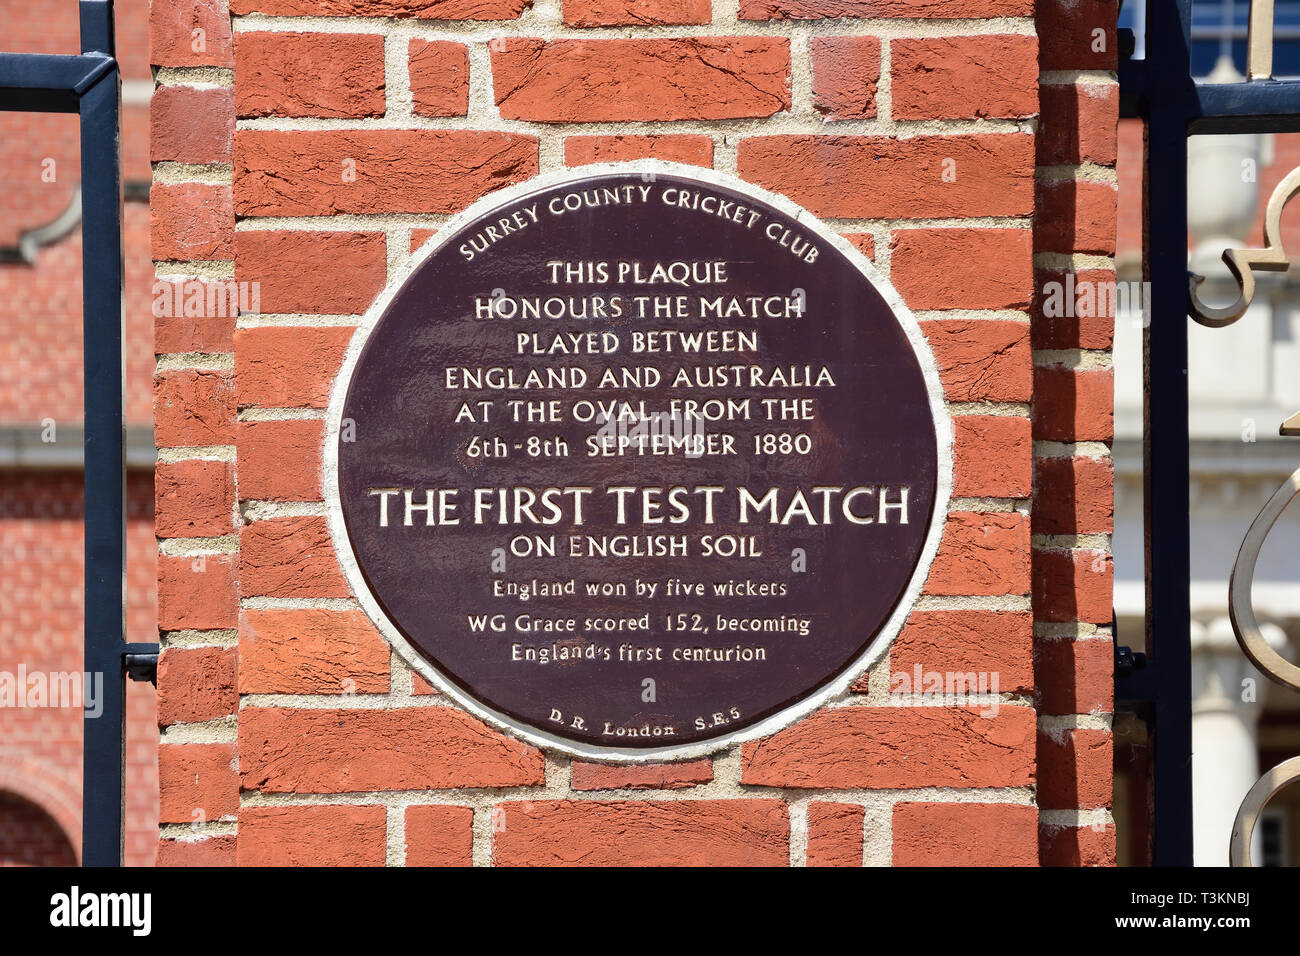 Plaque à la mémoire de 1er test match joué en Angleterre, Oval Cricket Ground, Kennington, London Borough of Lambeth, Greater London, Angleterre, Royaume-Uni Banque D'Images